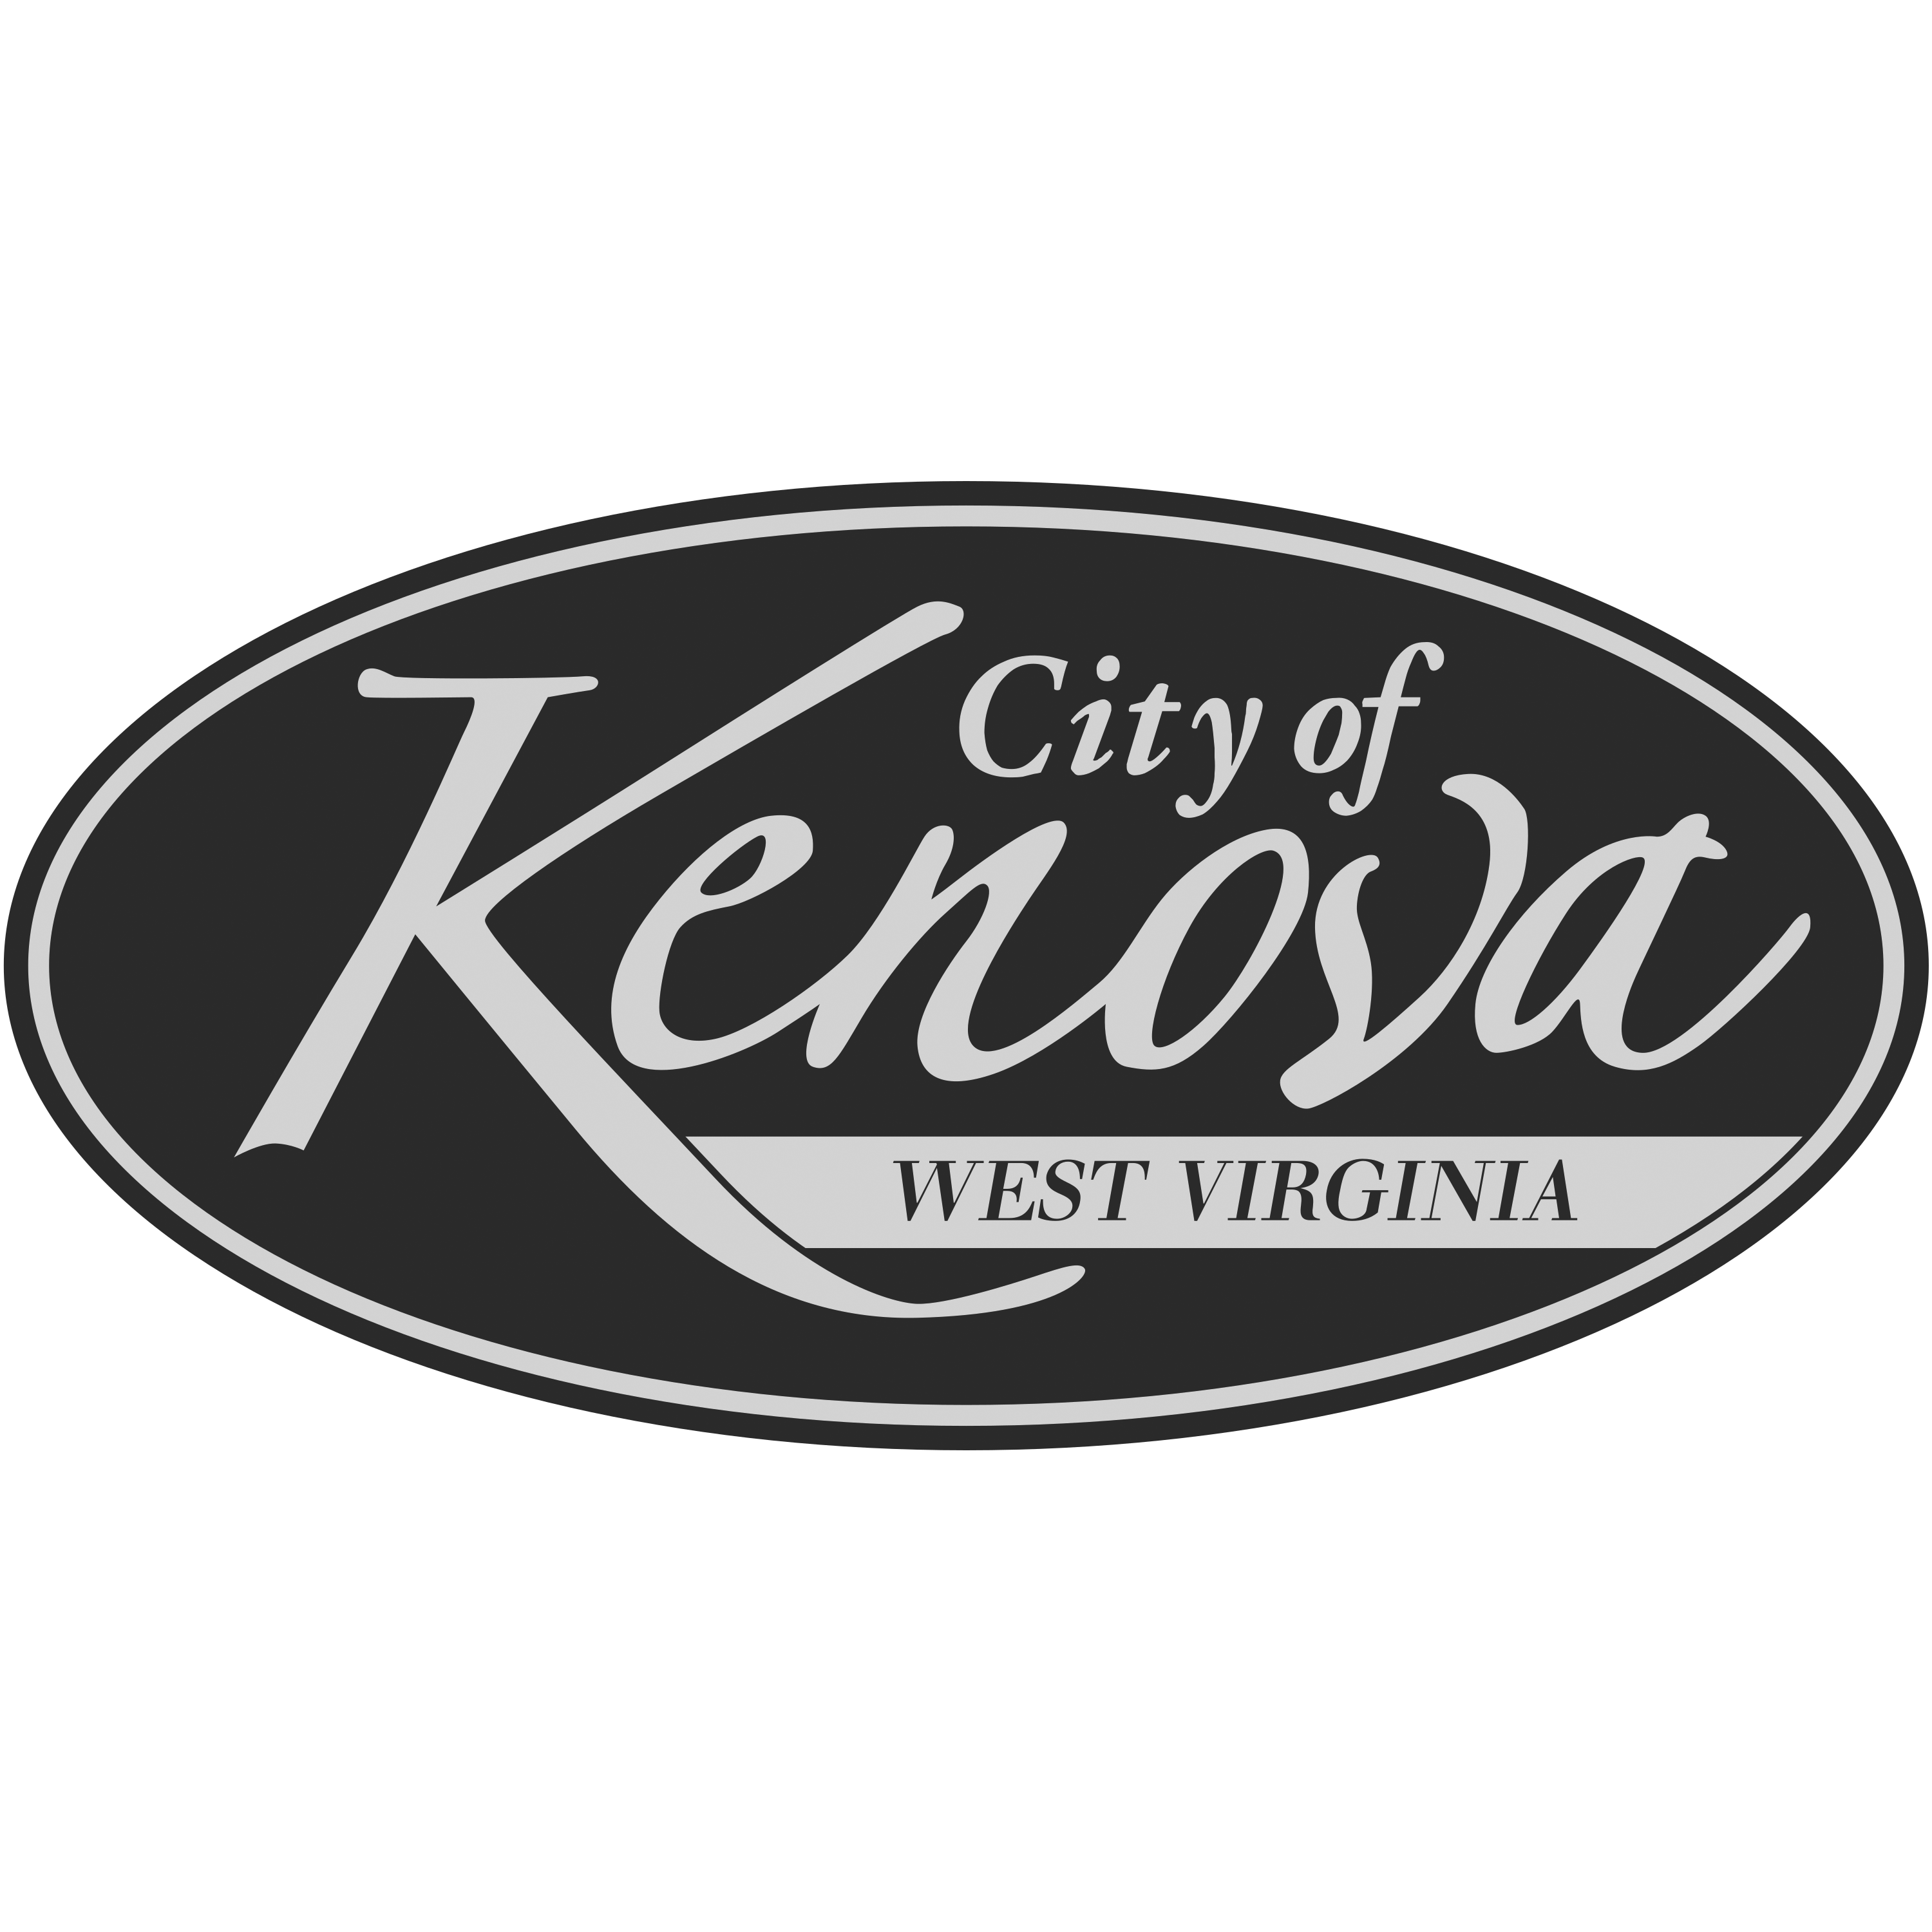 Kenova West Virginia Logo Transparent Photo